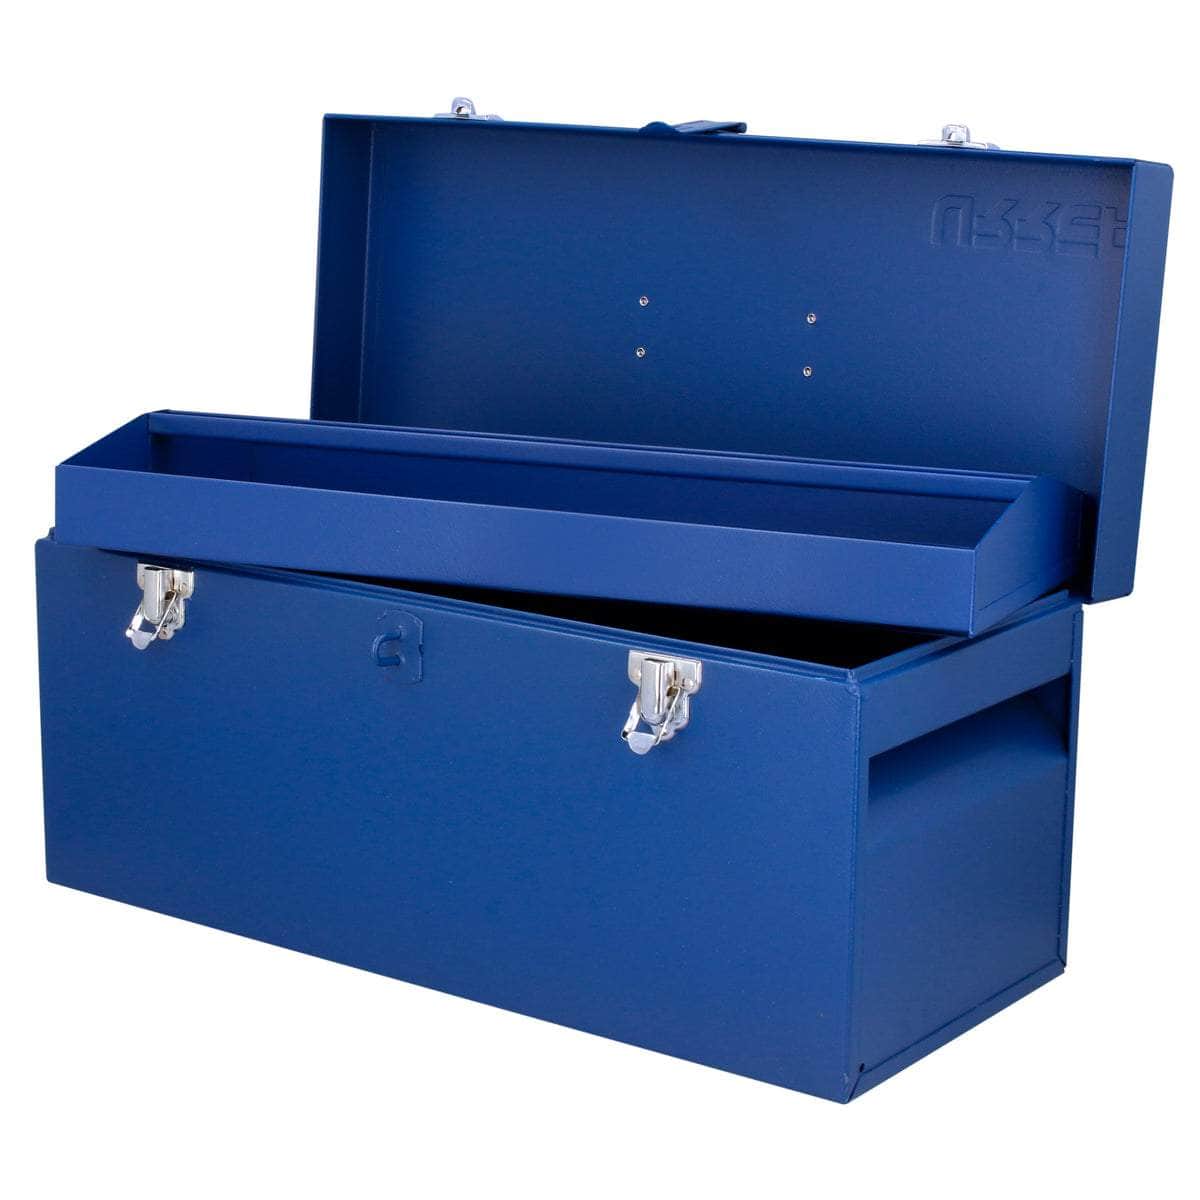 D6A Caja portaherramientas metálica azul 20" x 8" x 9", cod.D6A Urrea Urrea